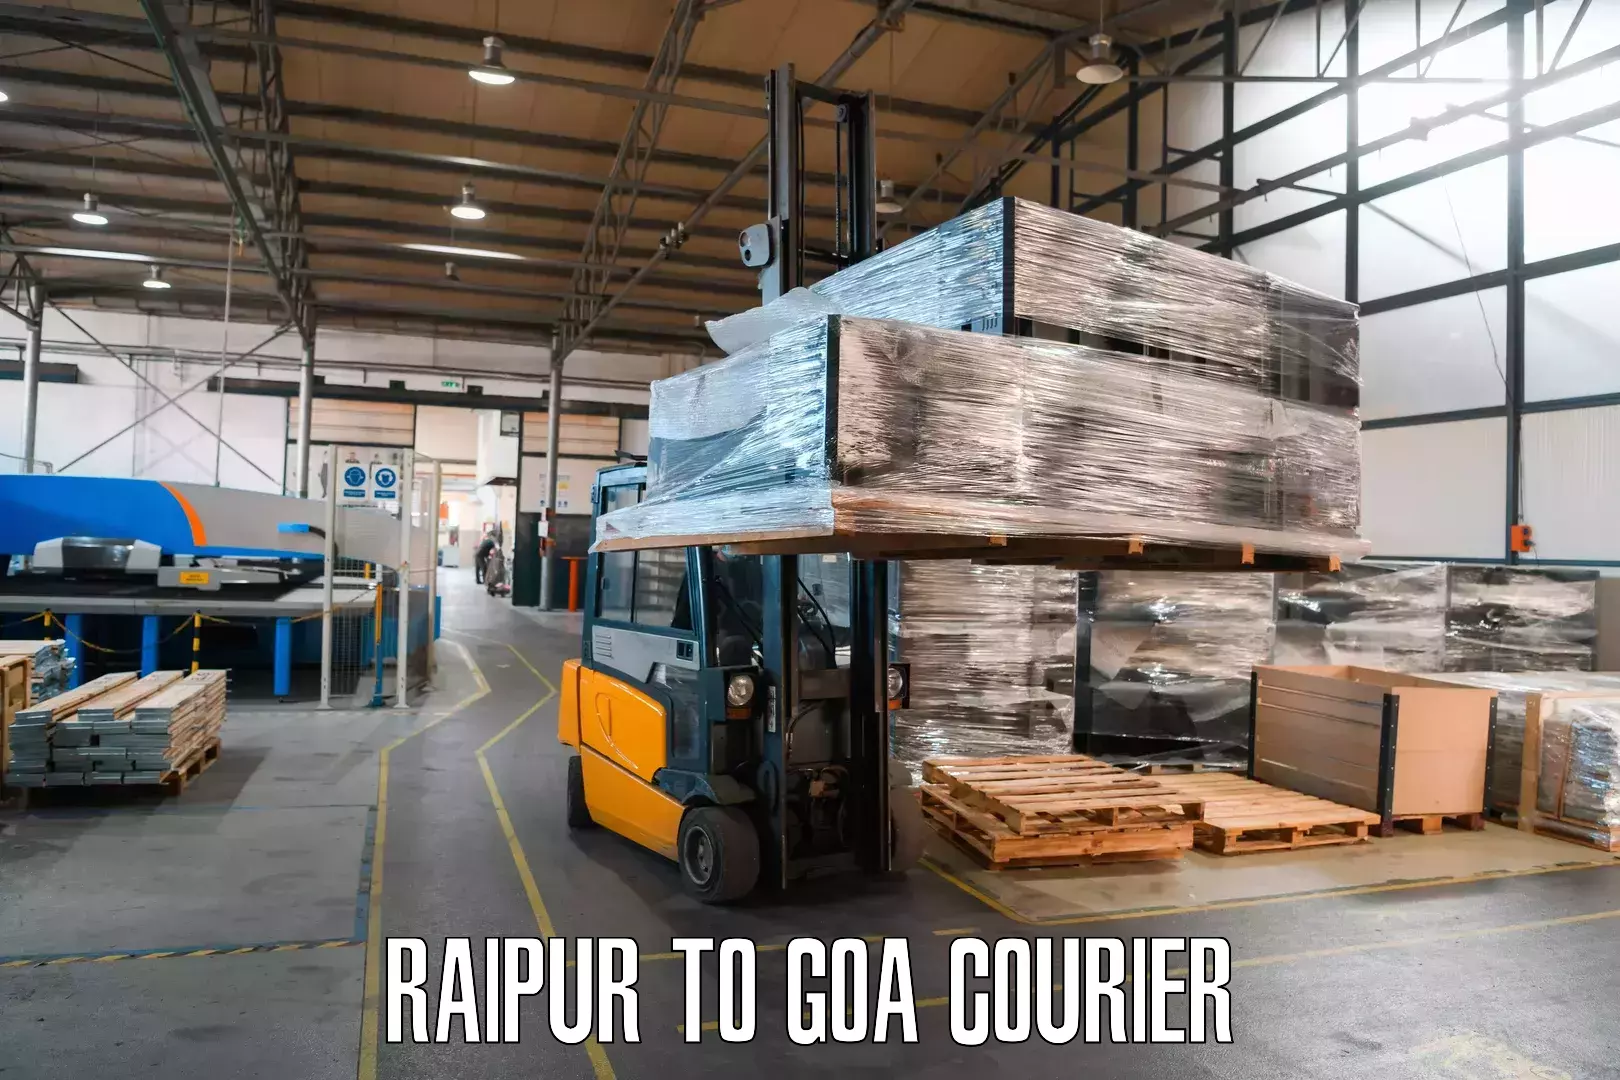 Courier service innovation Raipur to Panjim